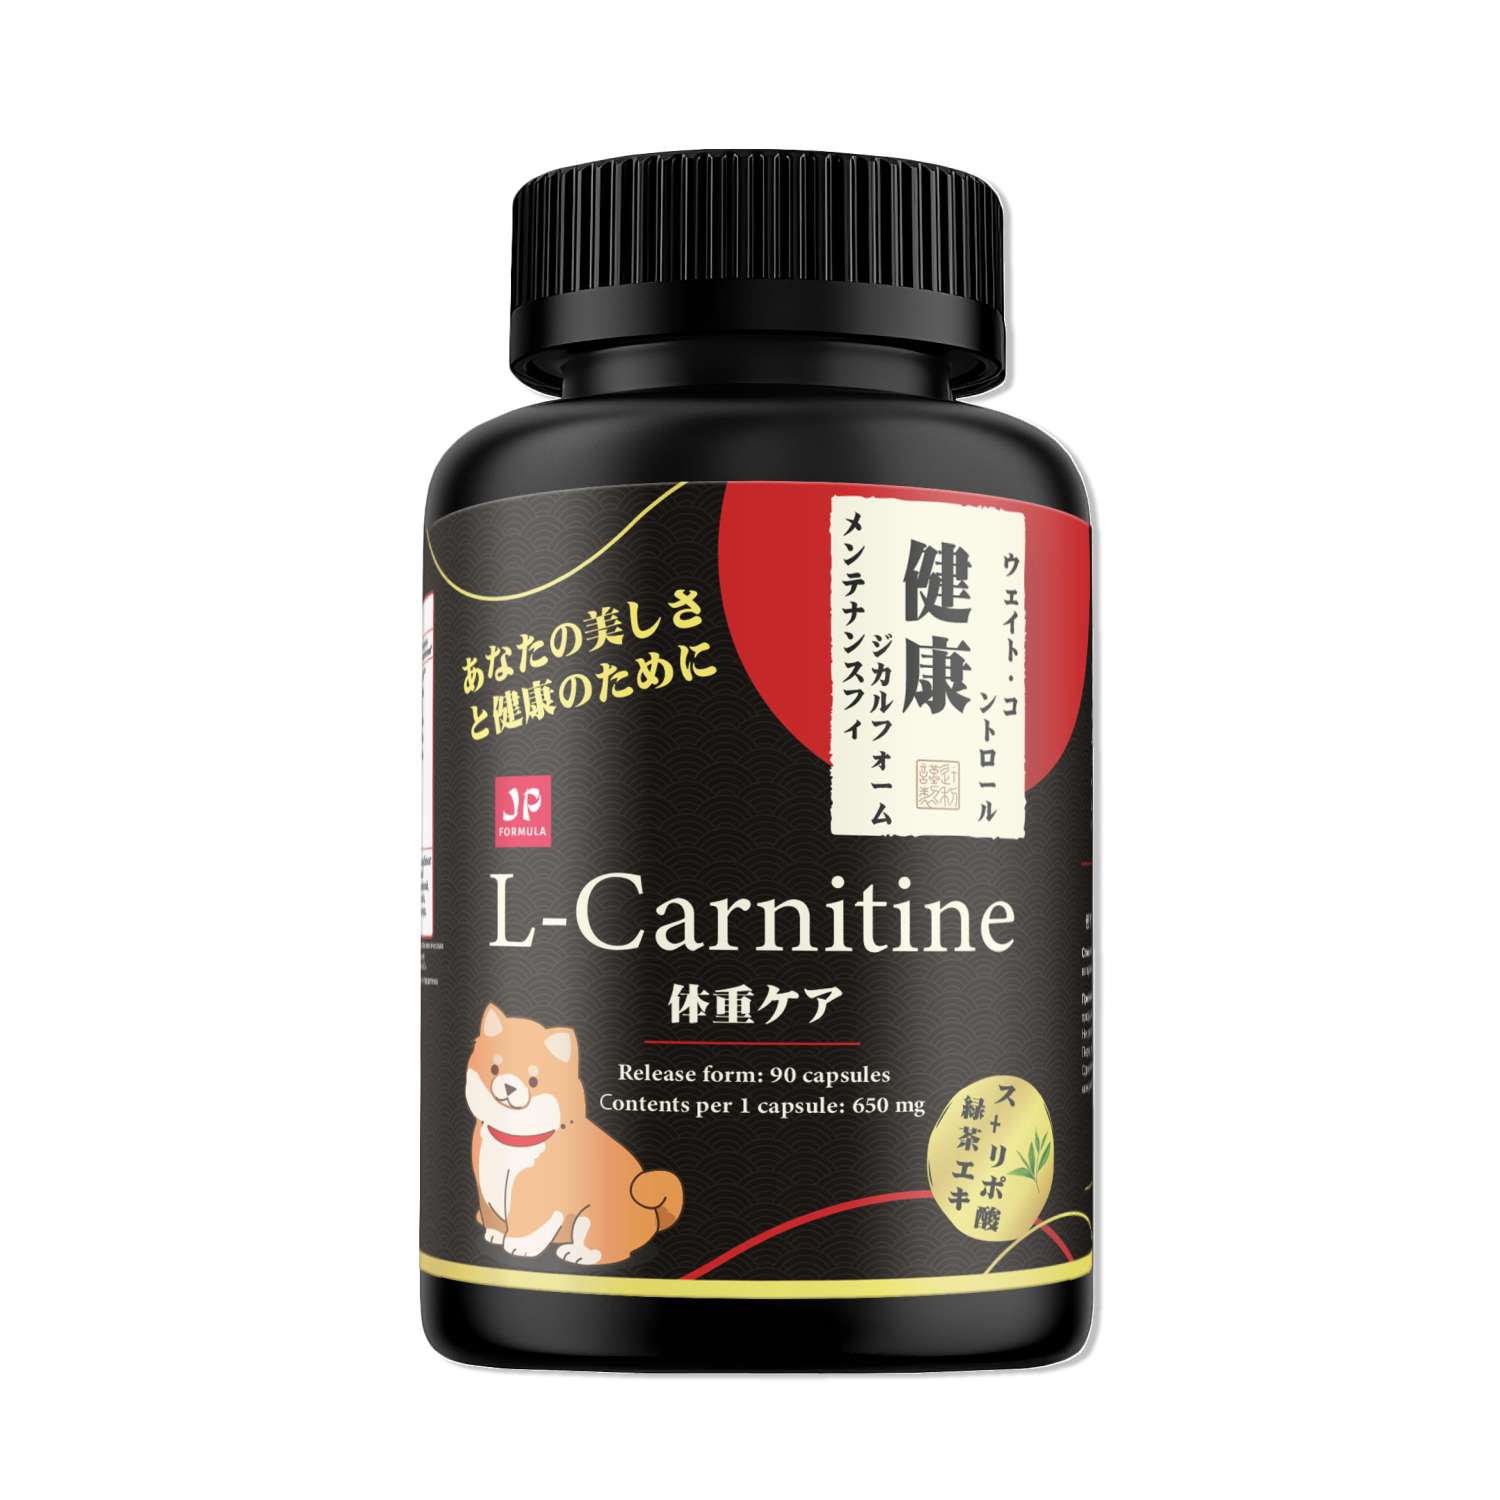 L карнитин жиросжигатель Japan Formula капсулы для похудения - фото 1